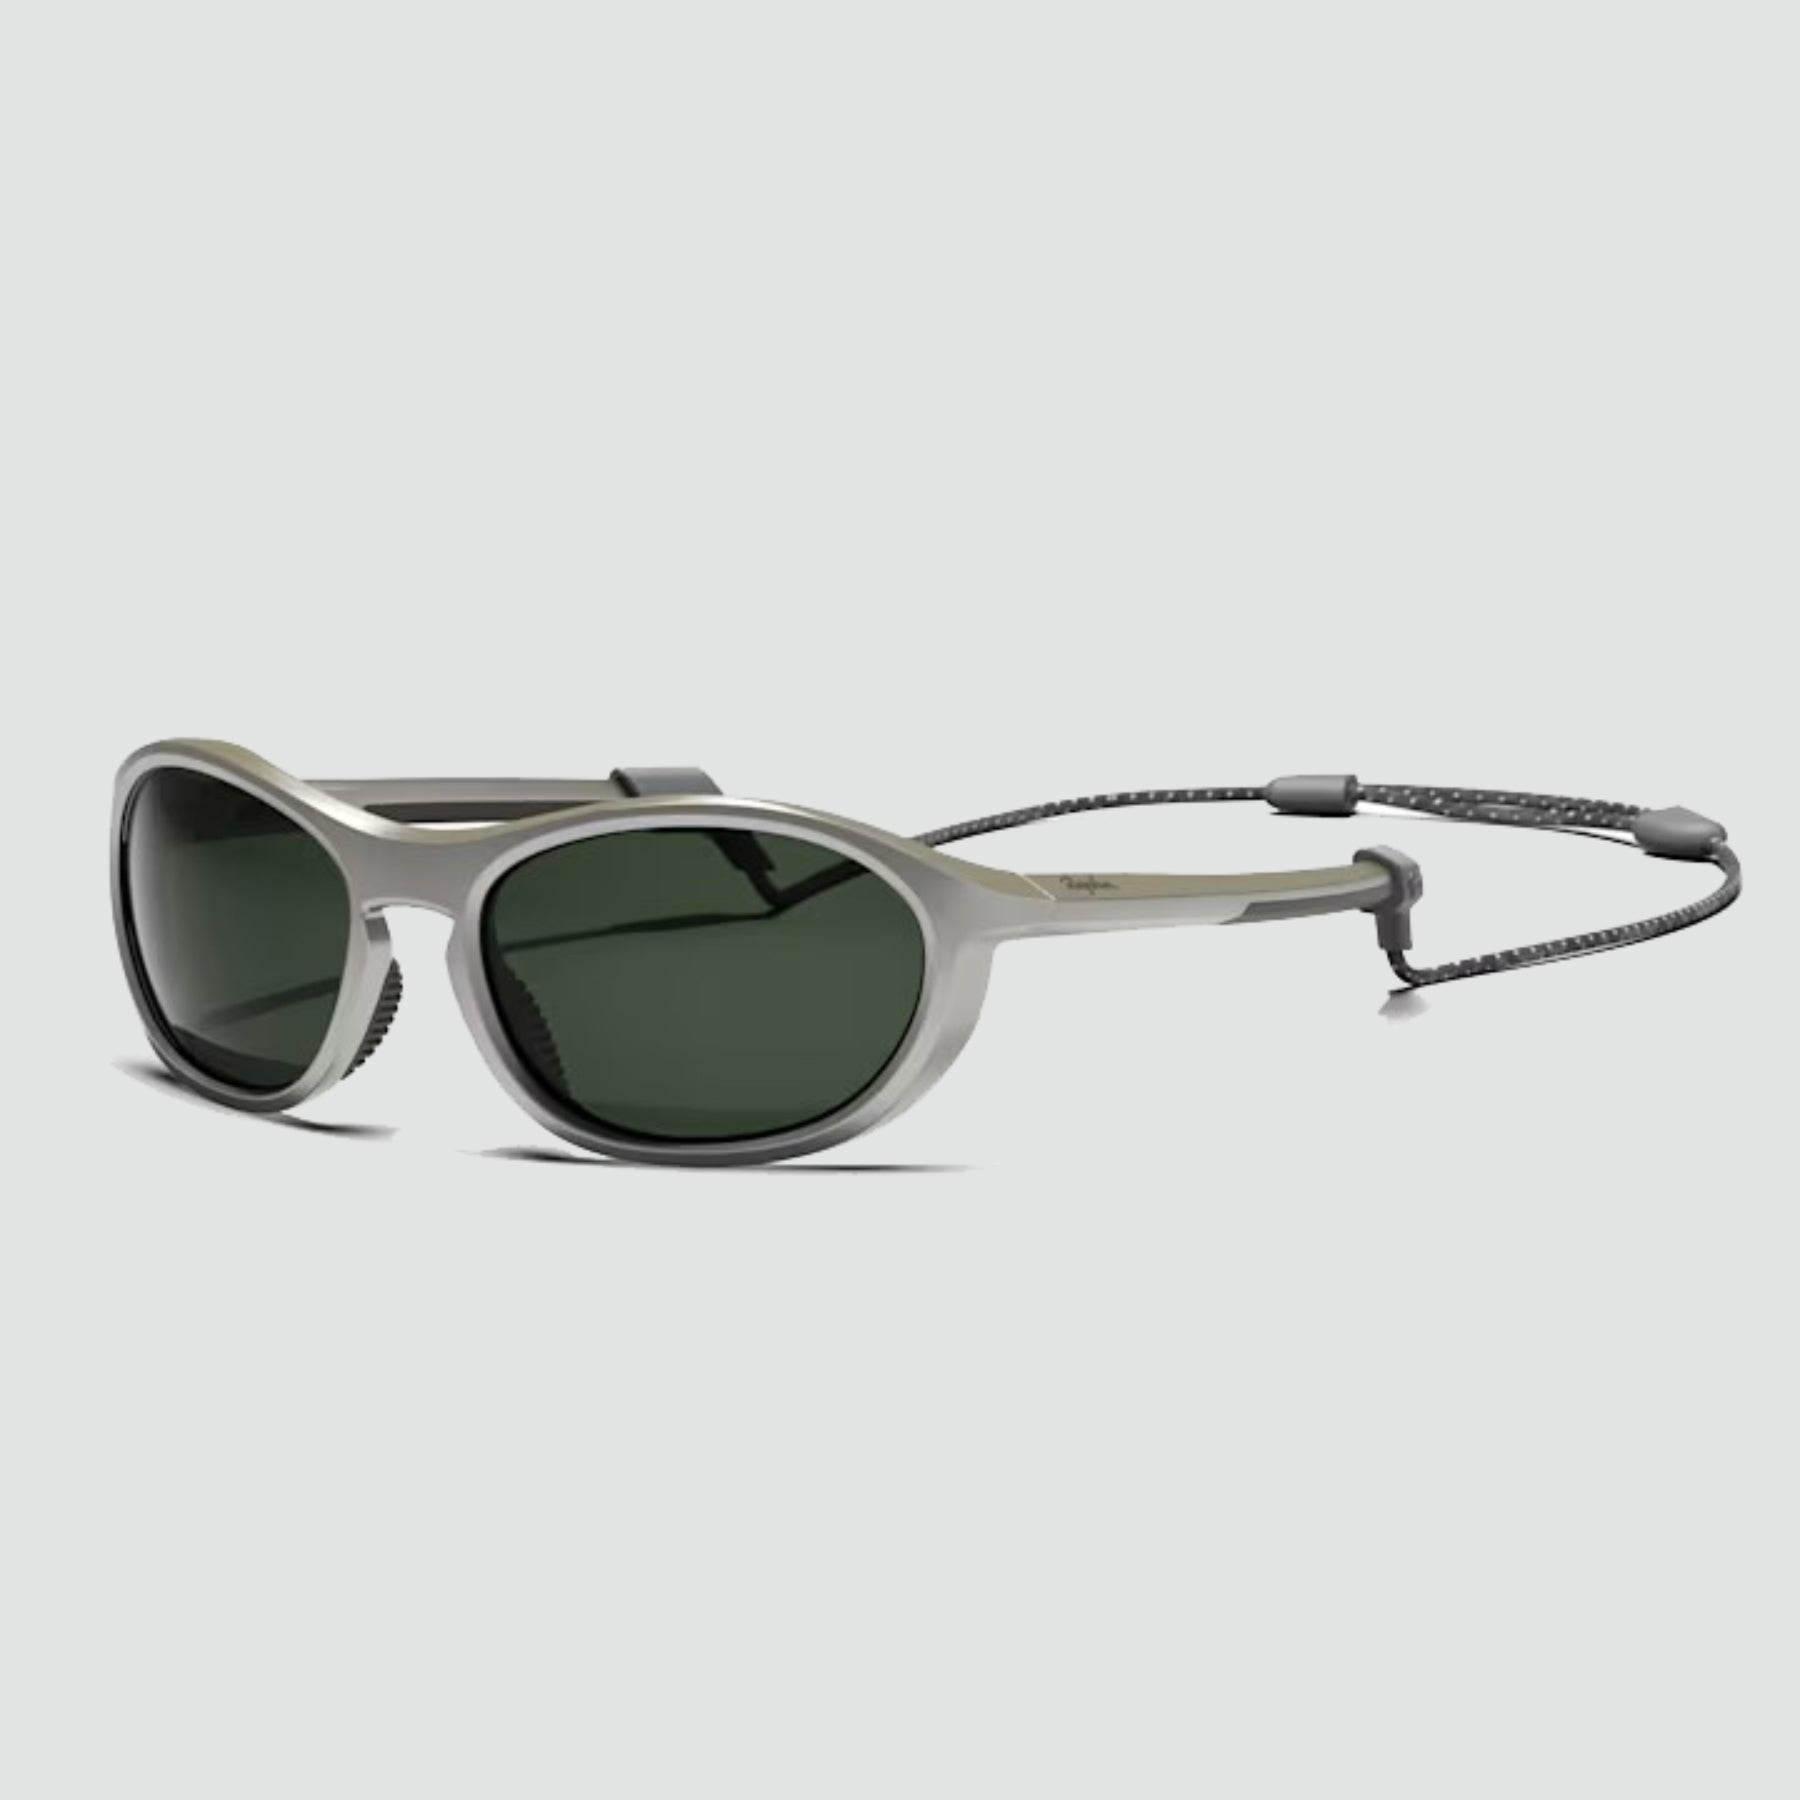 Rapha Dalton Glasses - Silver Metallic / Green